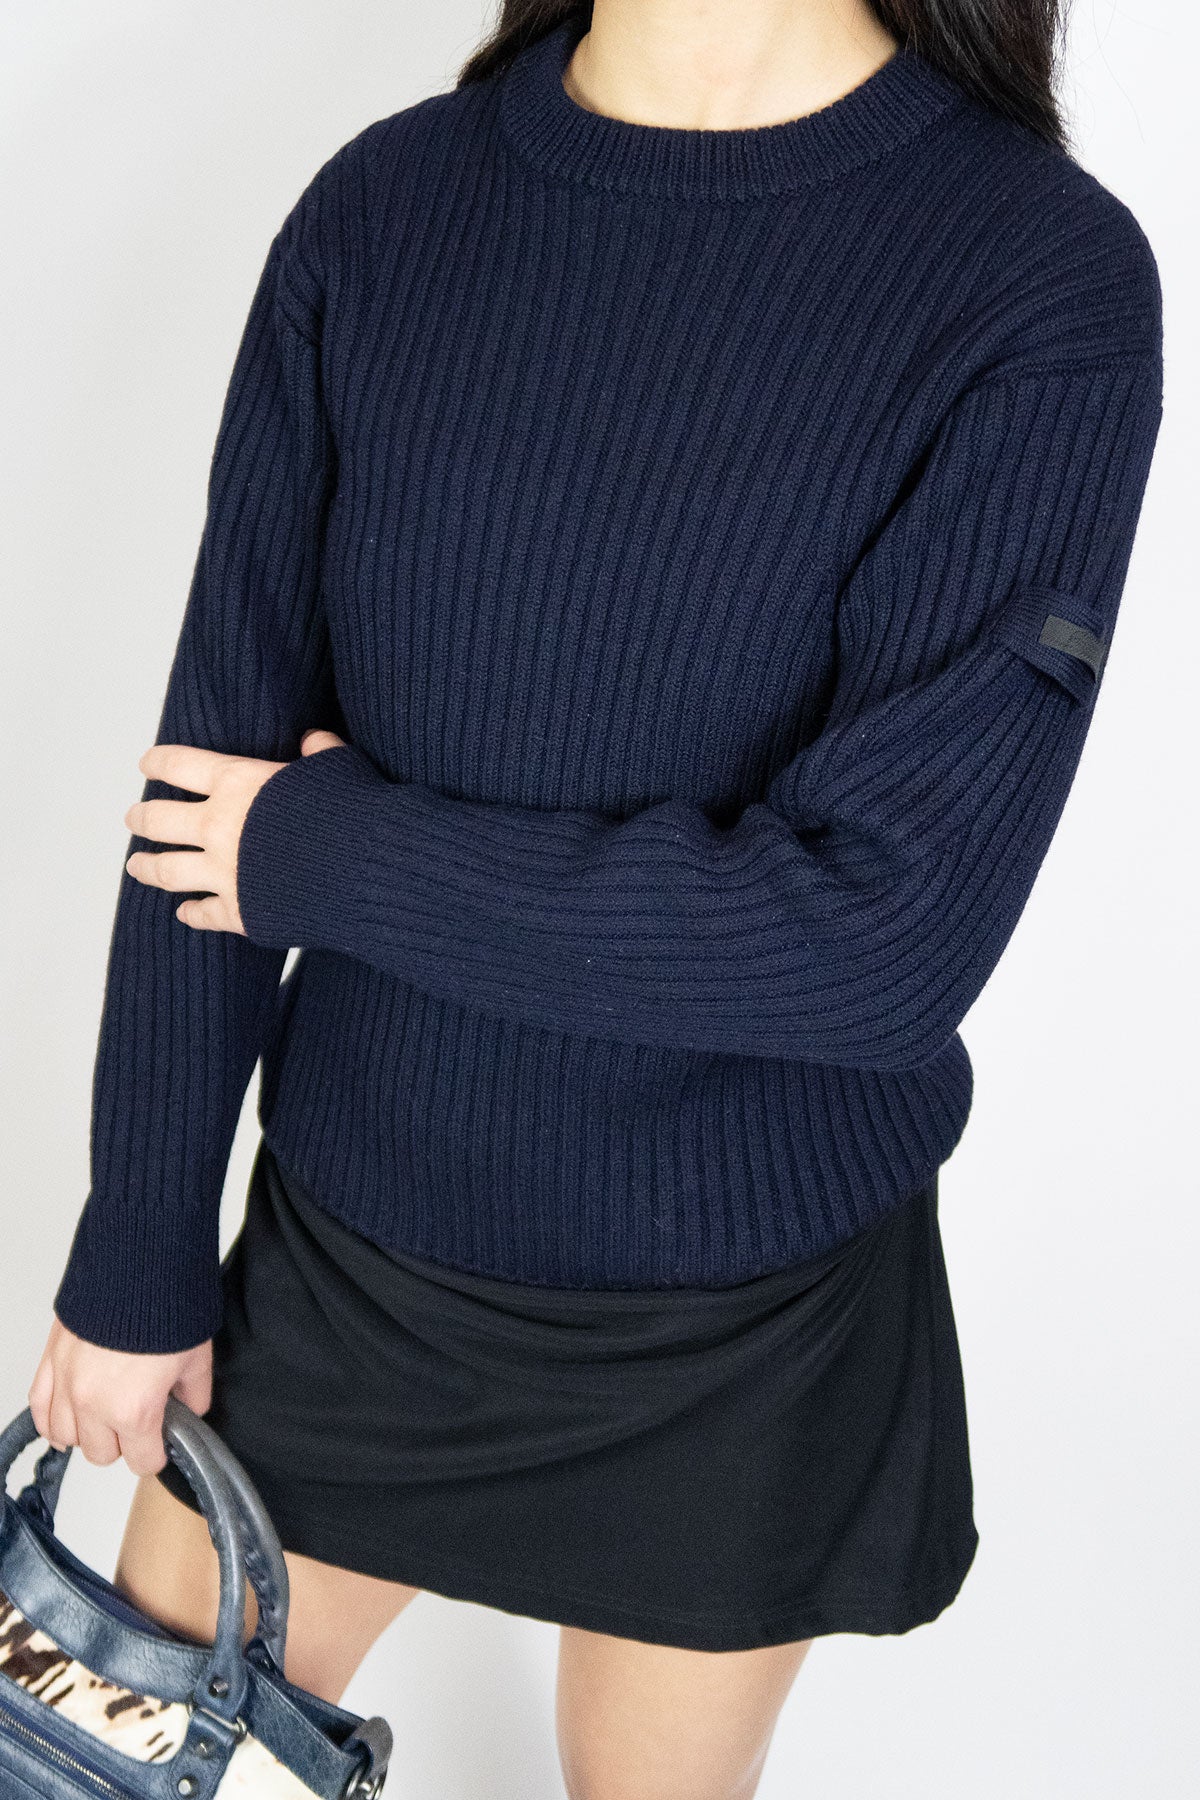 Prada Navy Wool Sweater / Mens 44 - Jade Vintage